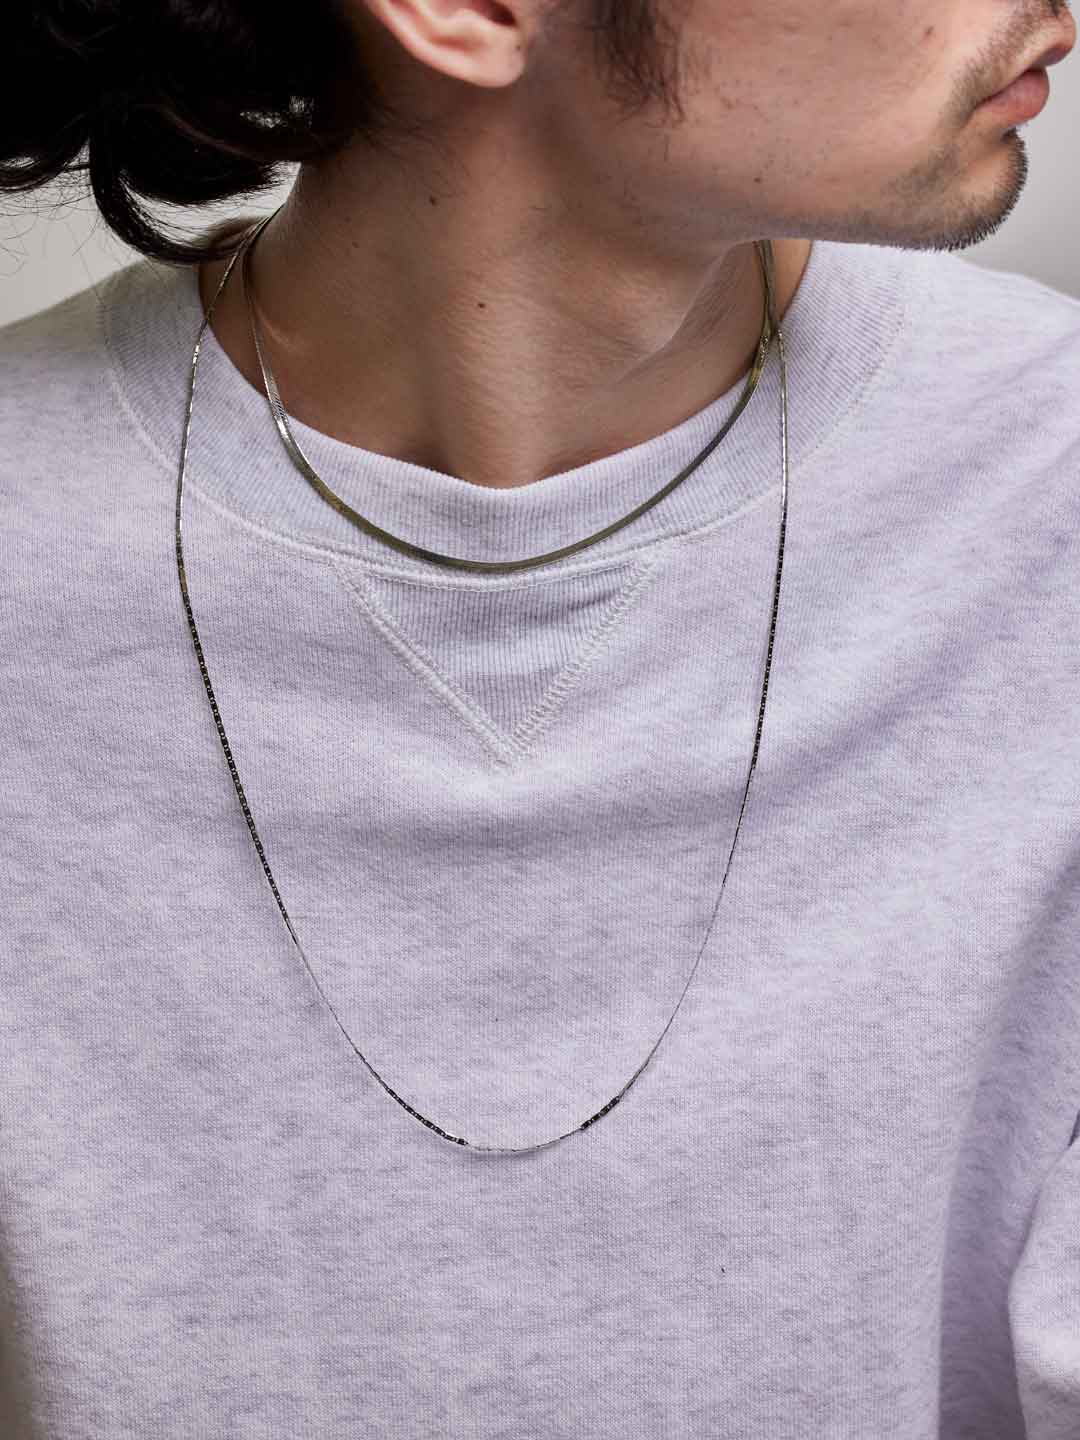 Mio Chain Necklace - SILVER